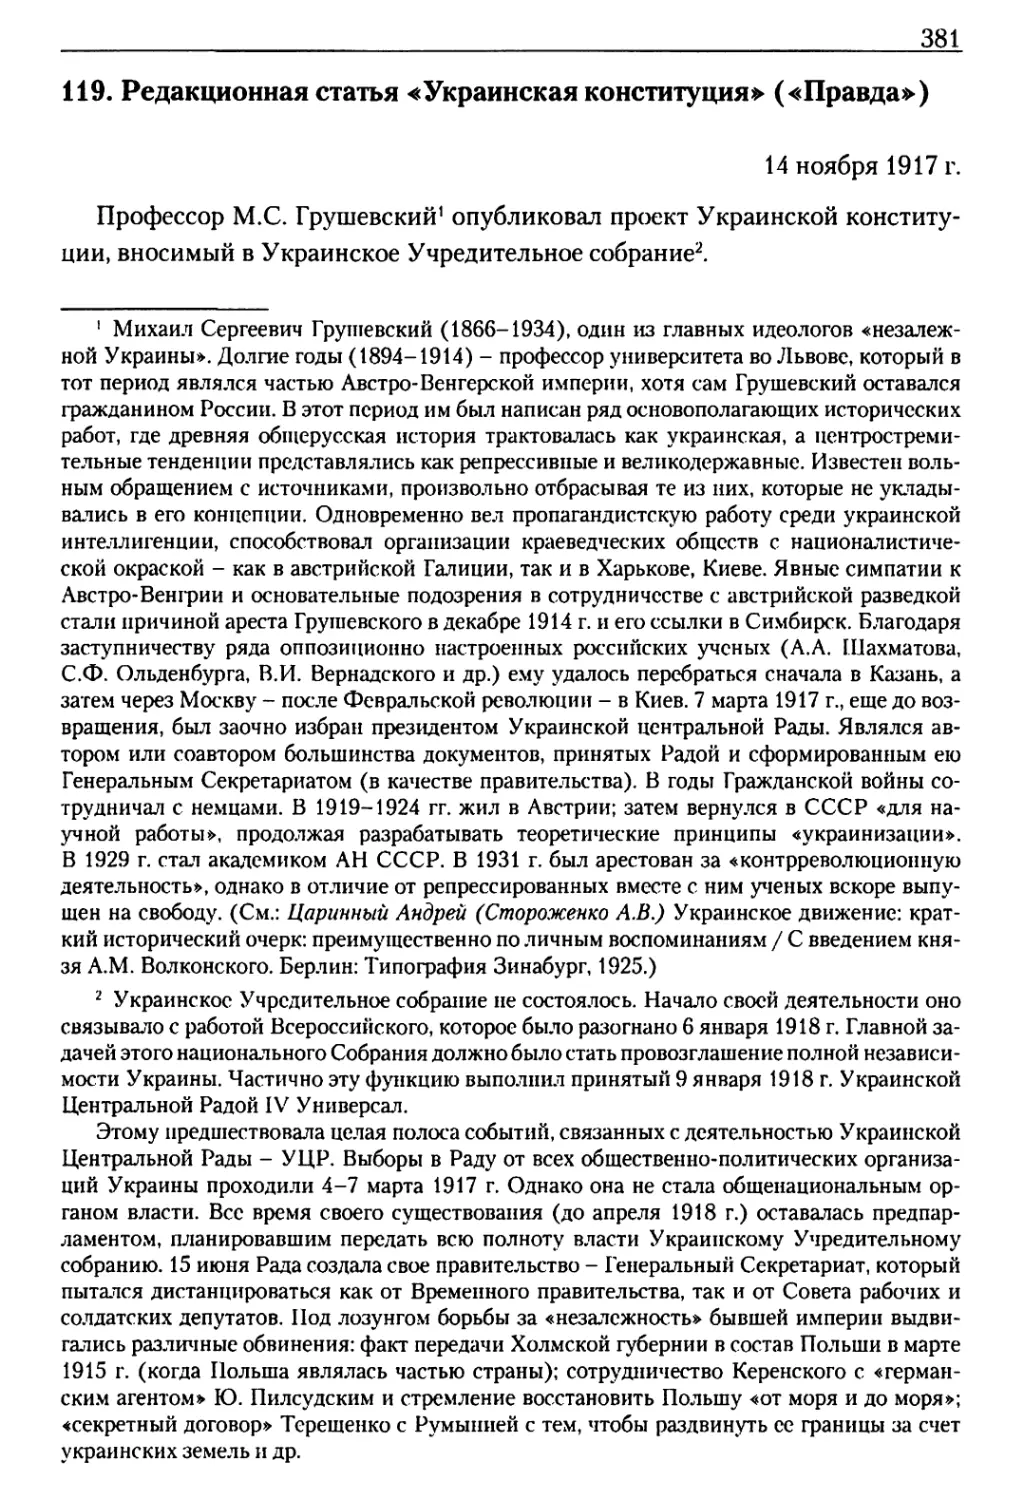 119. Редакционная статья «Украинская конституция»